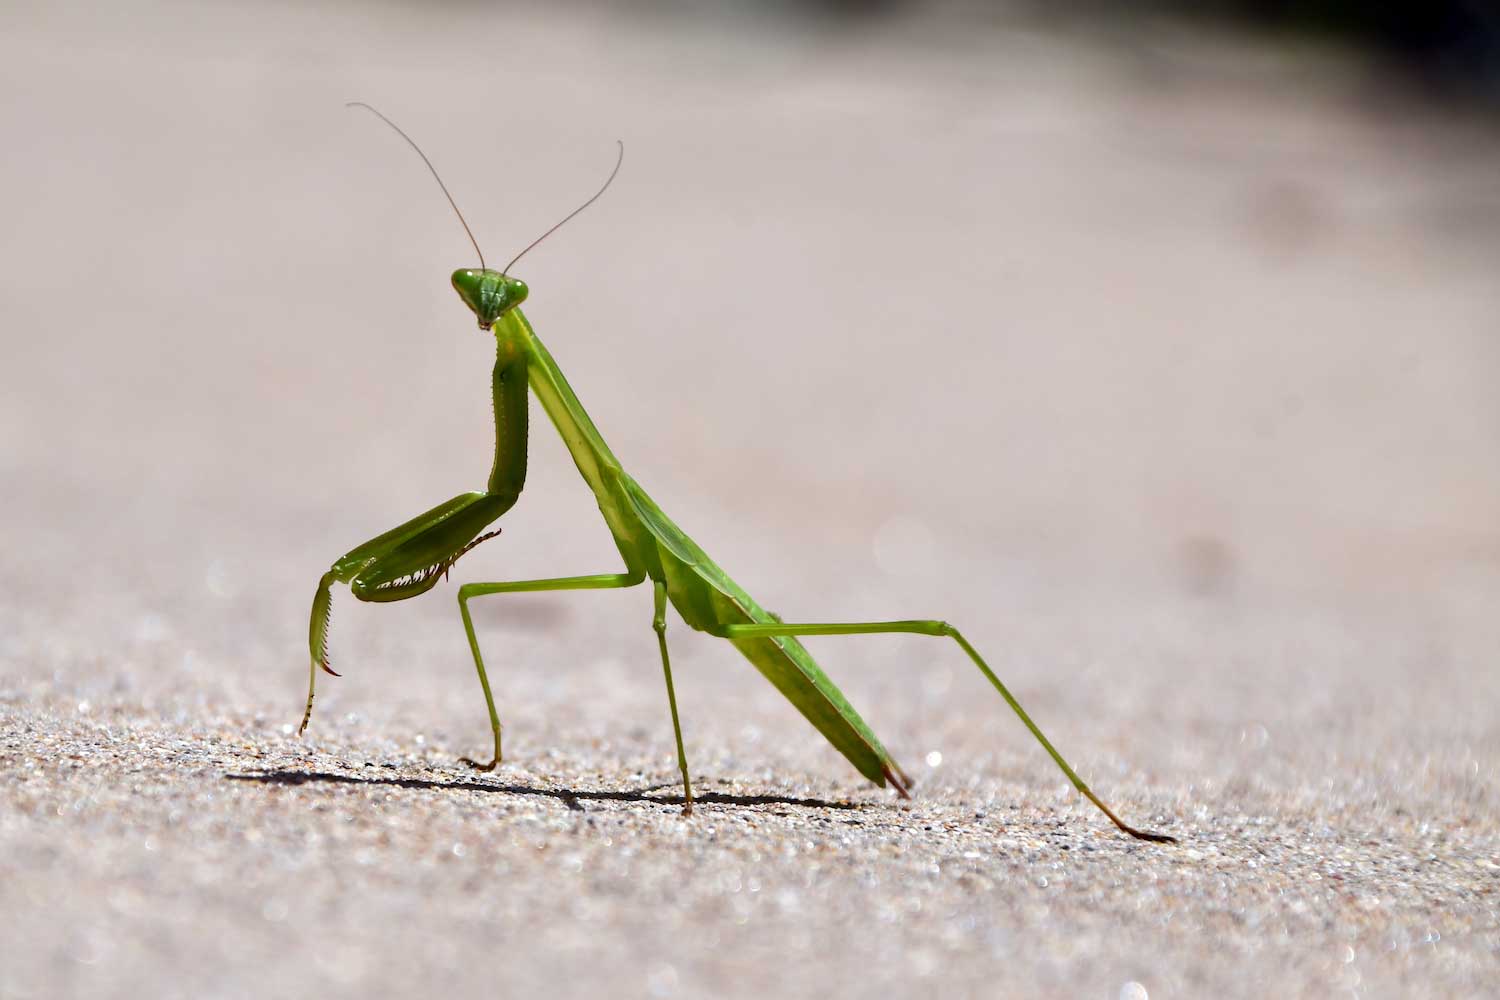 A green praying mantis on a sidewalk.